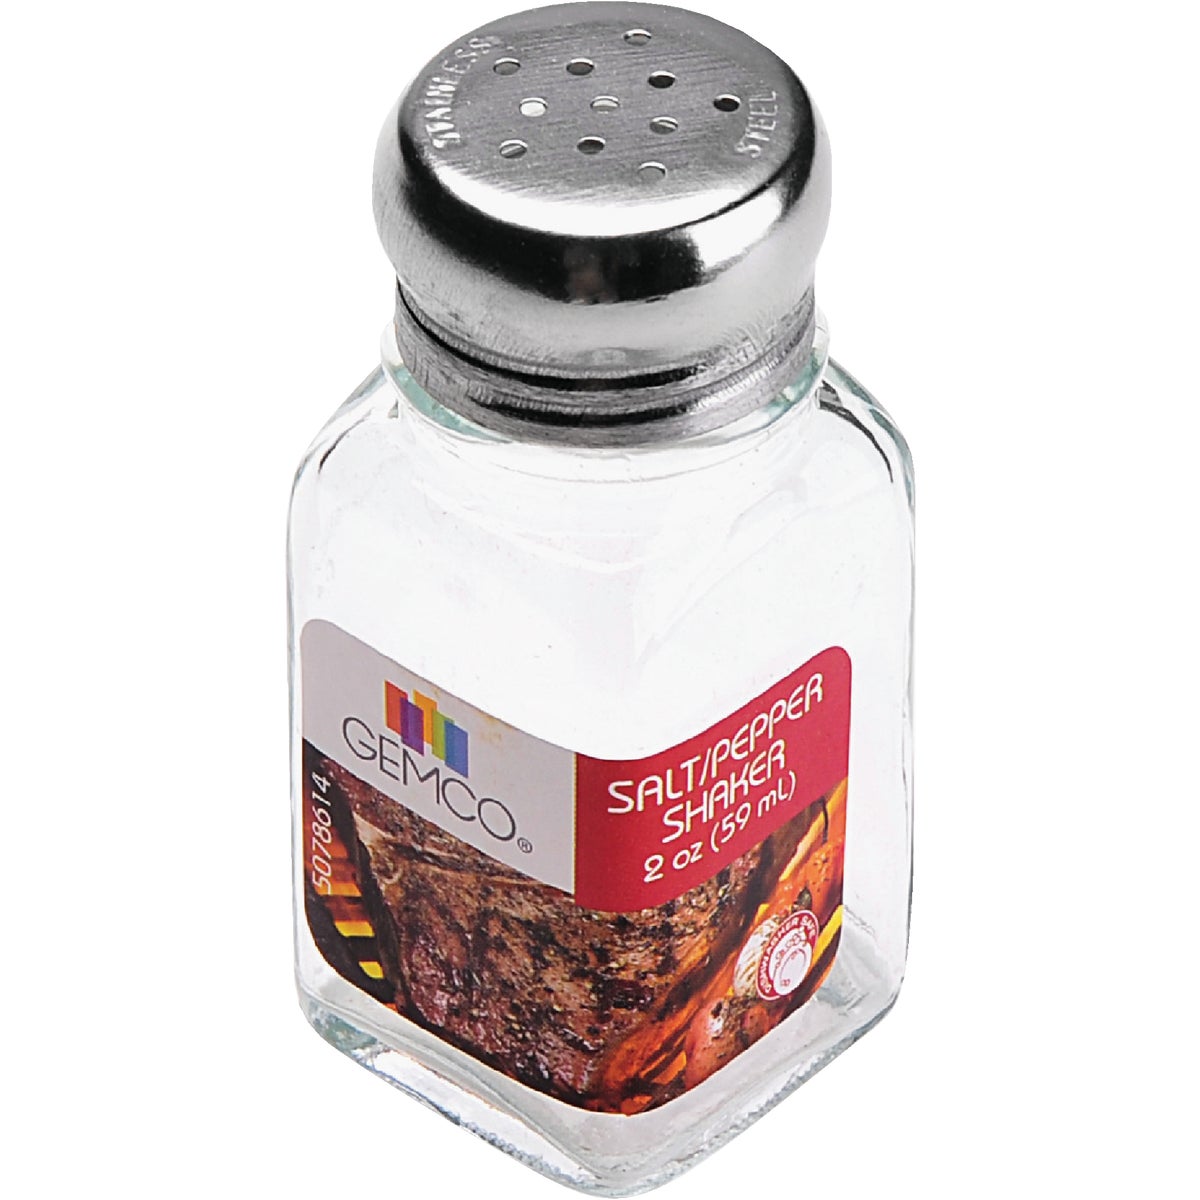 Gemco 2 Oz. Glass Square Salt & Pepper Shaker Set